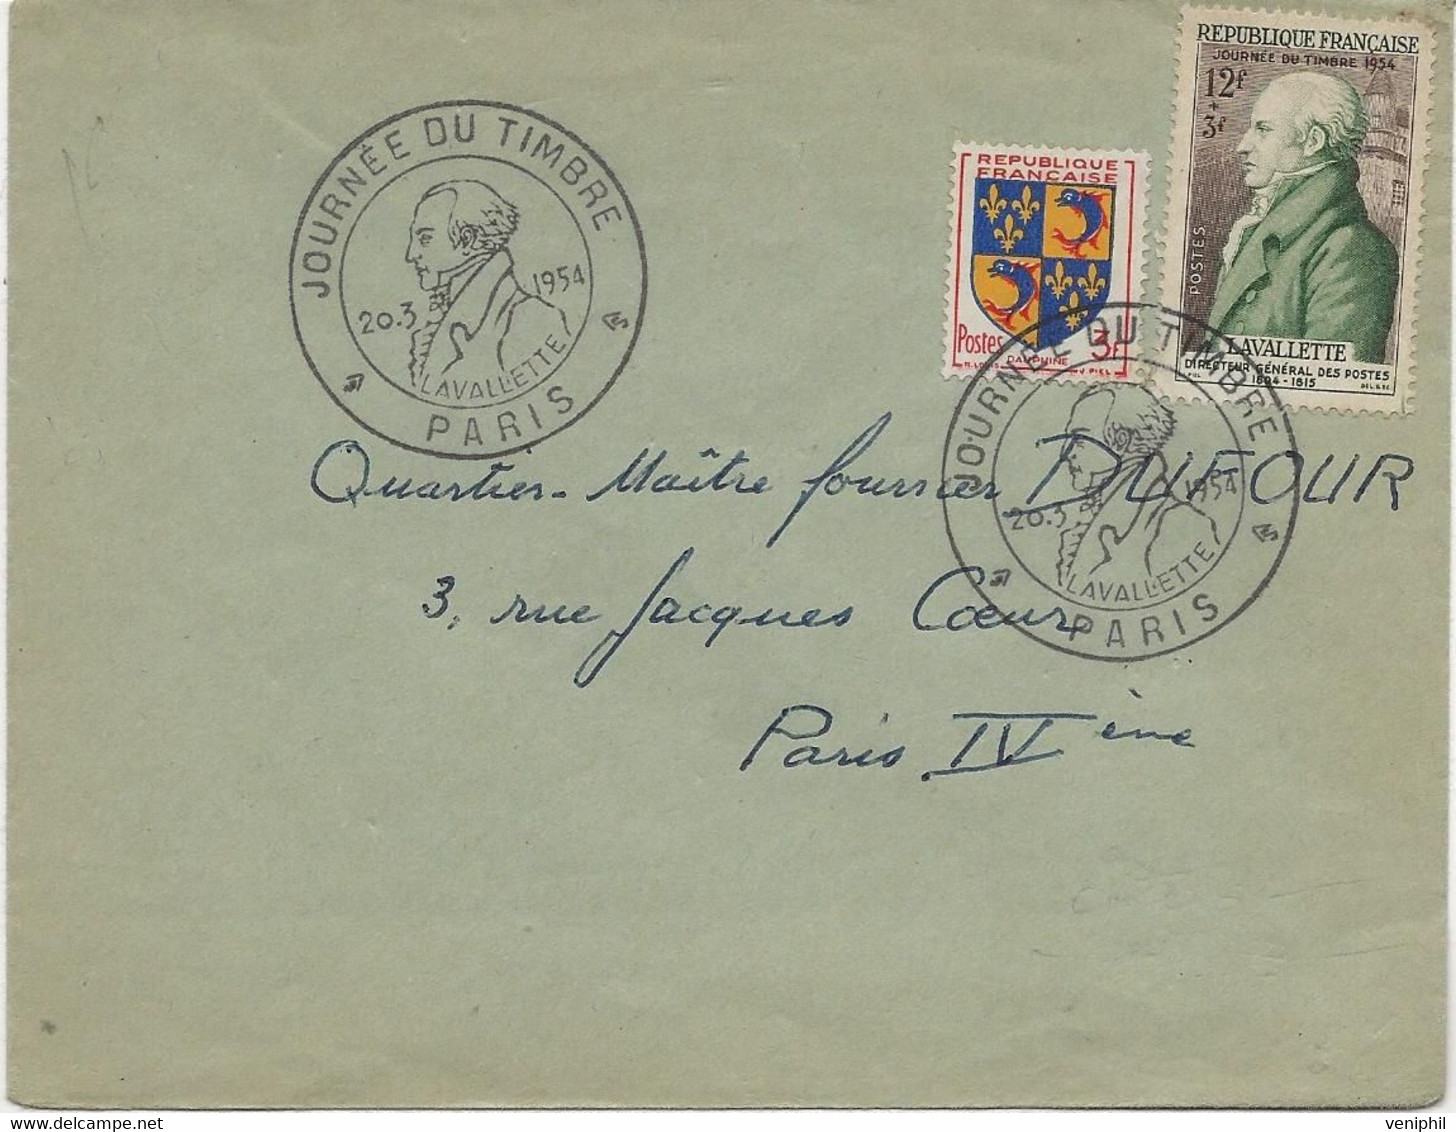 LETTRE AFFRANCHIE N° 954 + N° 969 - CACHET ILLUSTRE -JOURNEE DU TMBRE -PARIS -1954 - Commemorative Postmarks